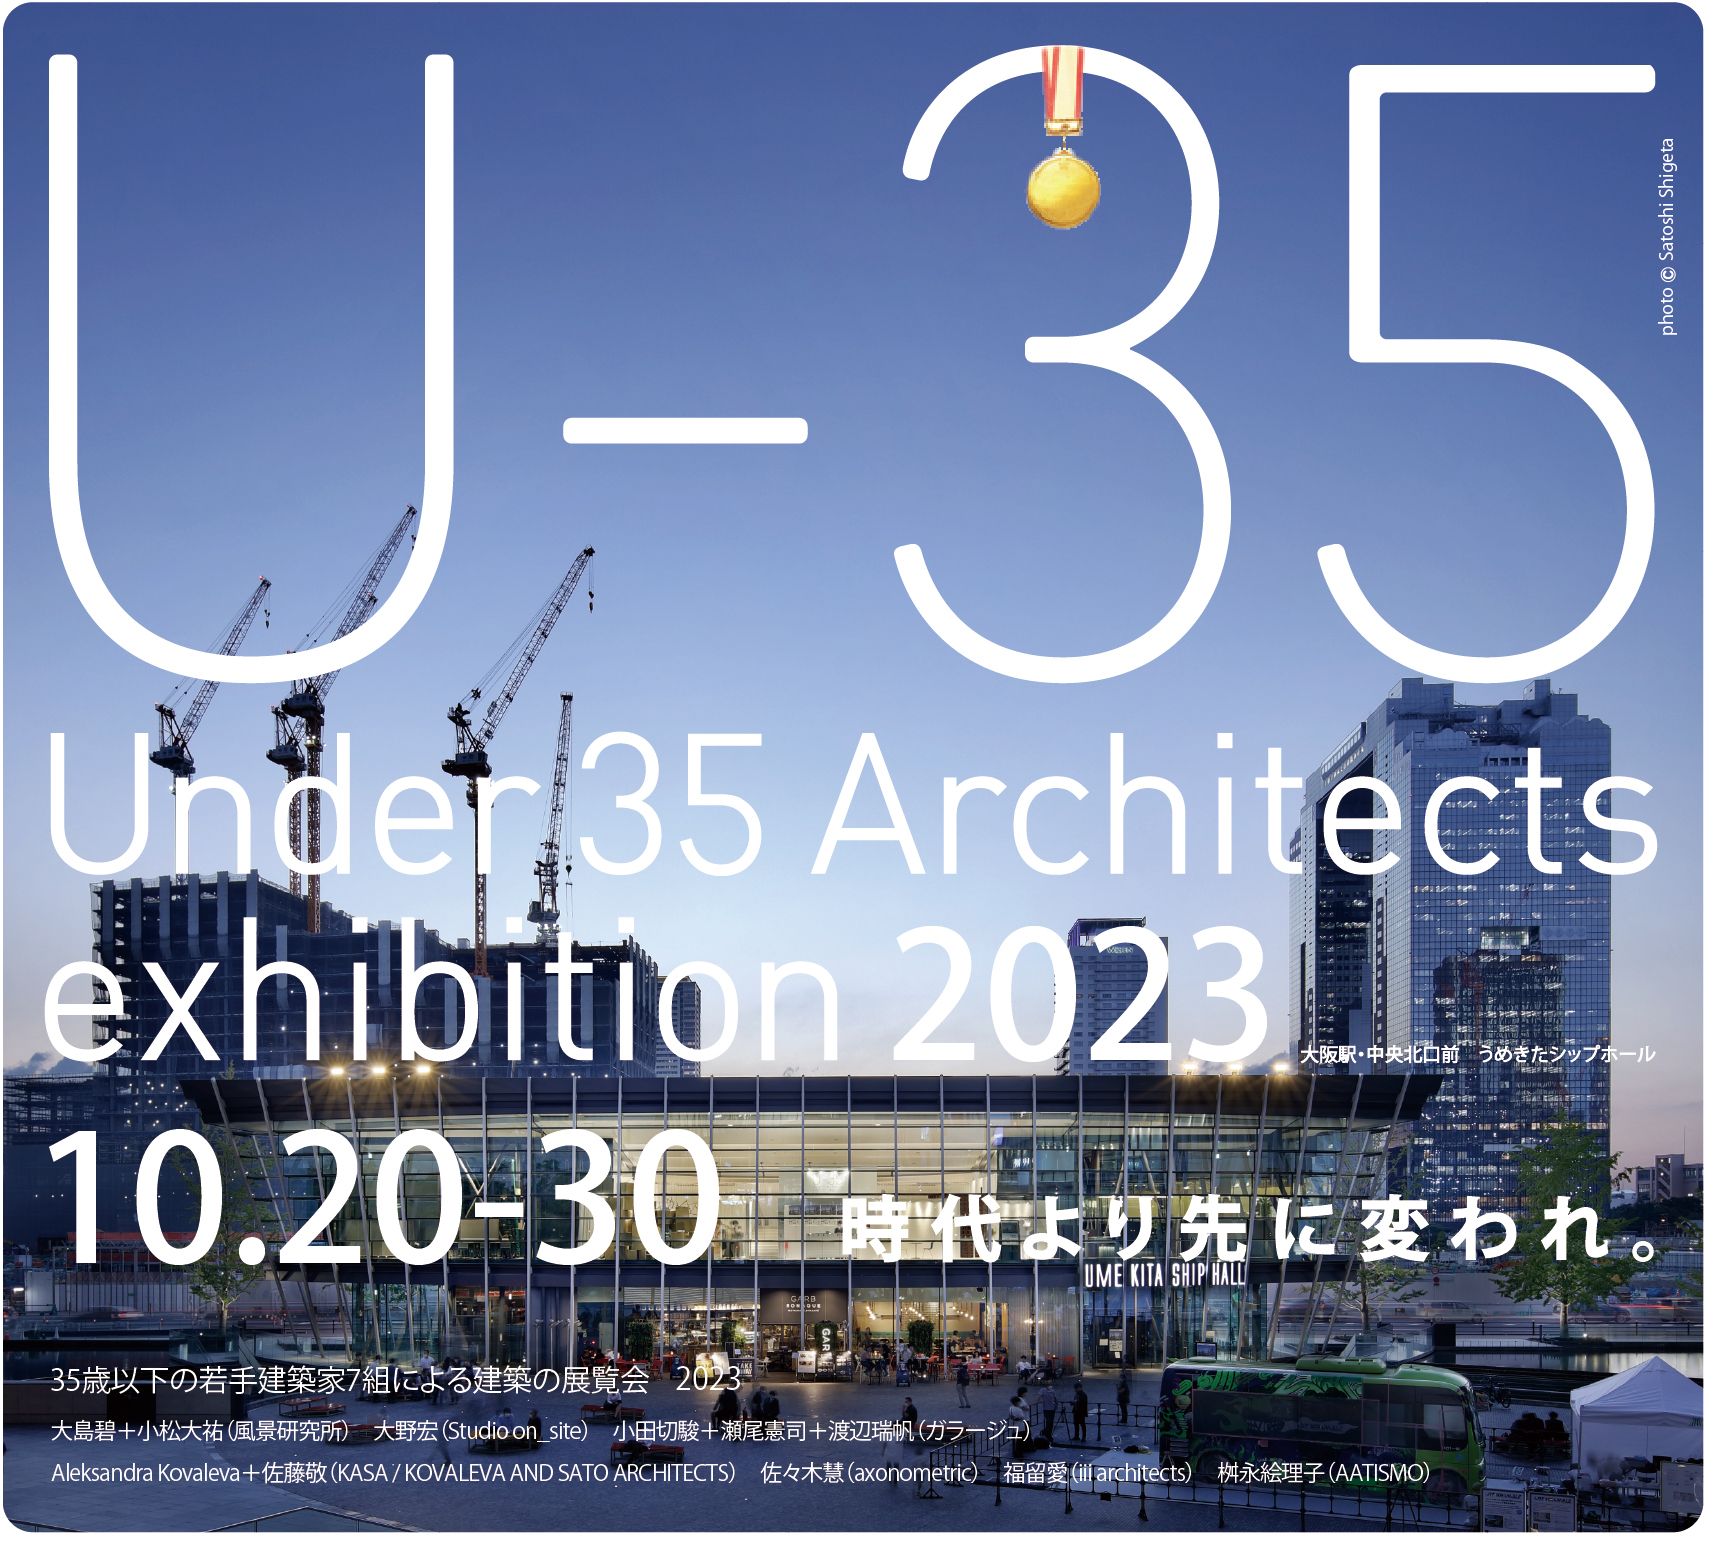 35歳以下の若手建築家による建築の展覧会」が今秋、大阪で開催